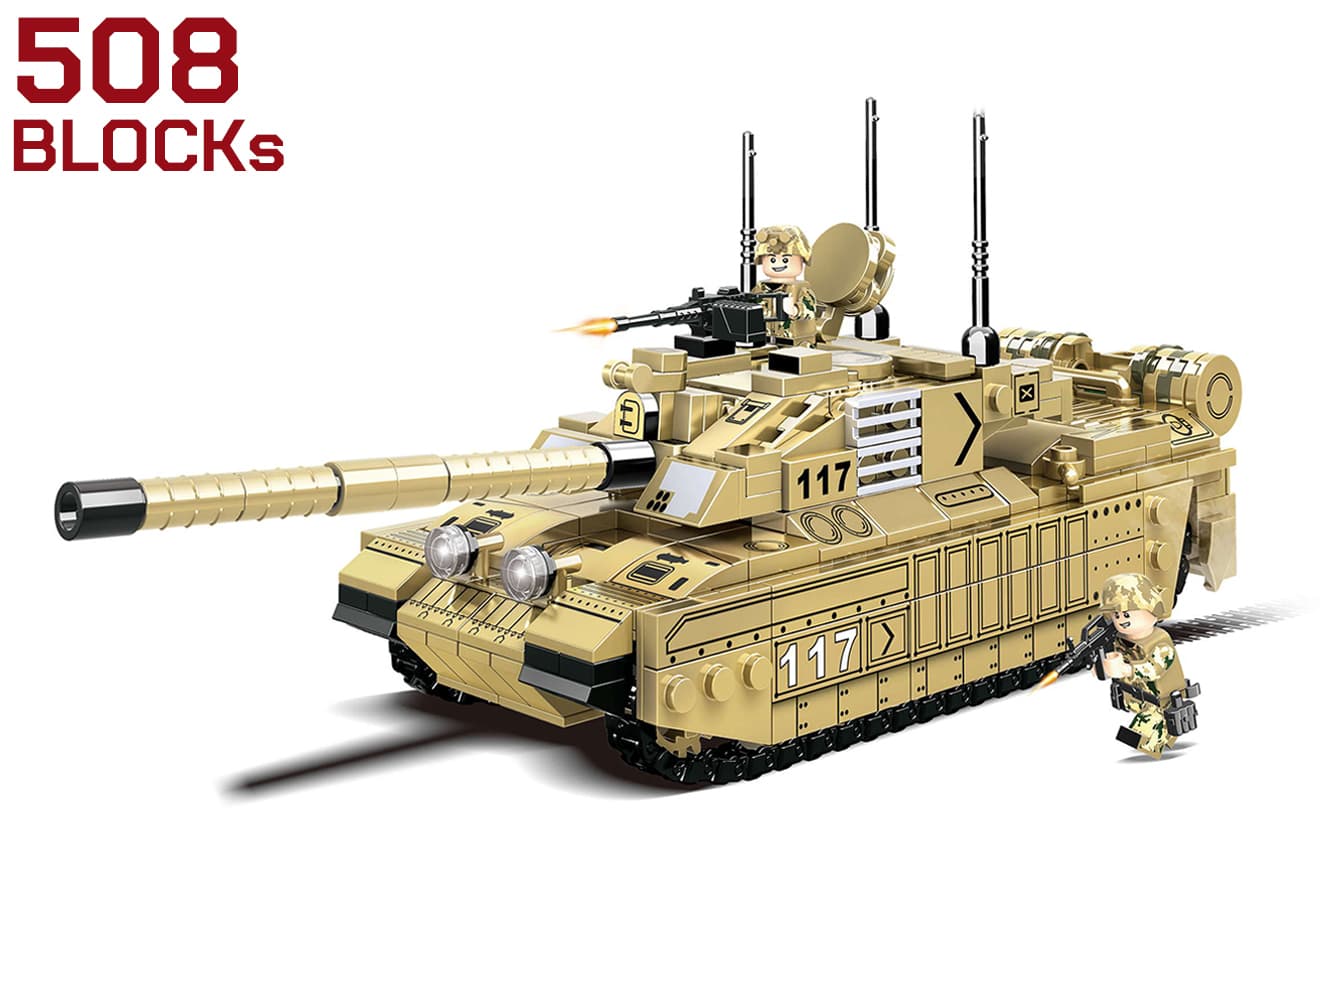 AFM ワールドタンクシリーズ イギリス軍 チャレンジャー2 主力戦車 508Blocks